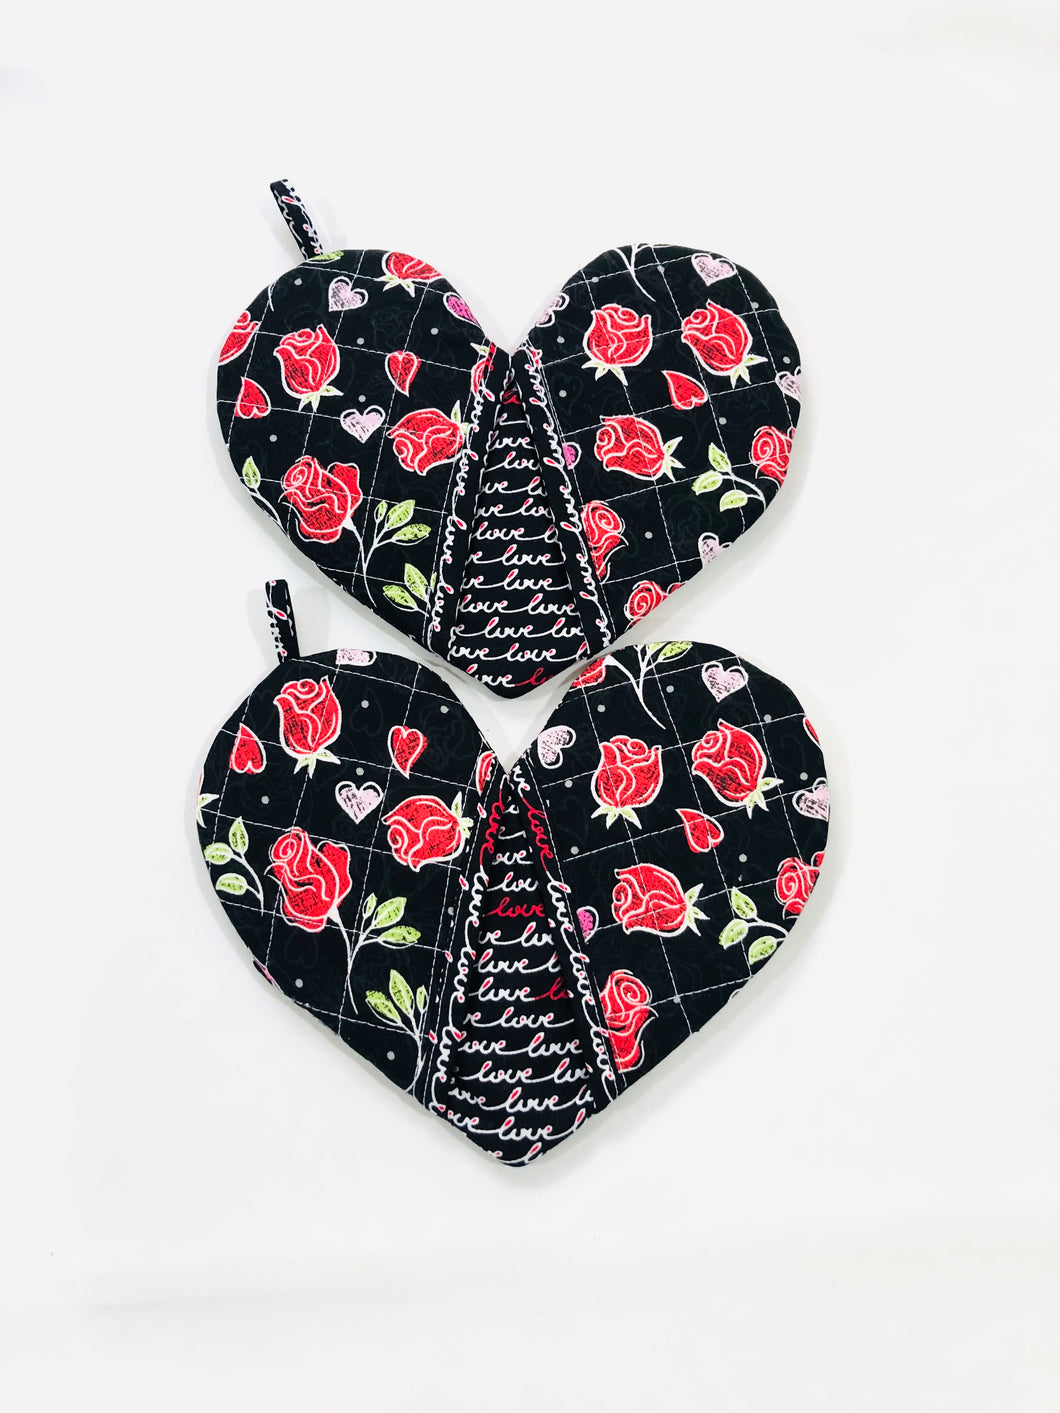 love mitten; red roses heart shape potholders; quilted potholders; heart-shaped mitt; heart shape mitt; heart-shaped potholders; quilted potholders; Cotton potholders